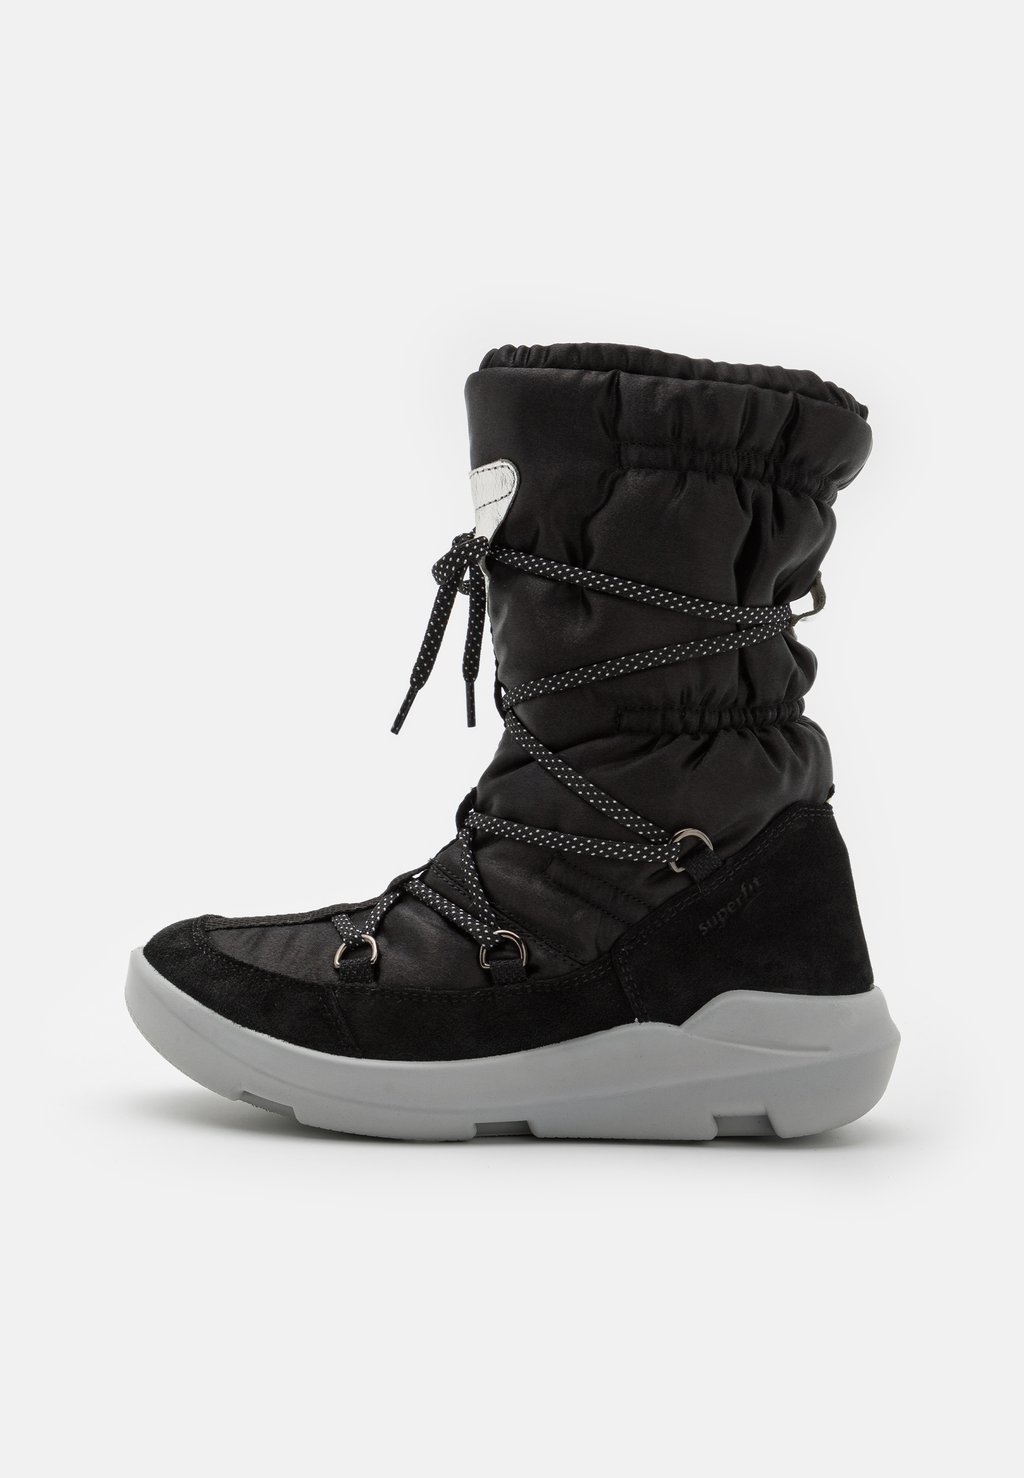 Зимние ботинки/зимние ботинки TWILIGHT Superfit, цвет schwarz mols зимние ботинки бакан цвет schwarz